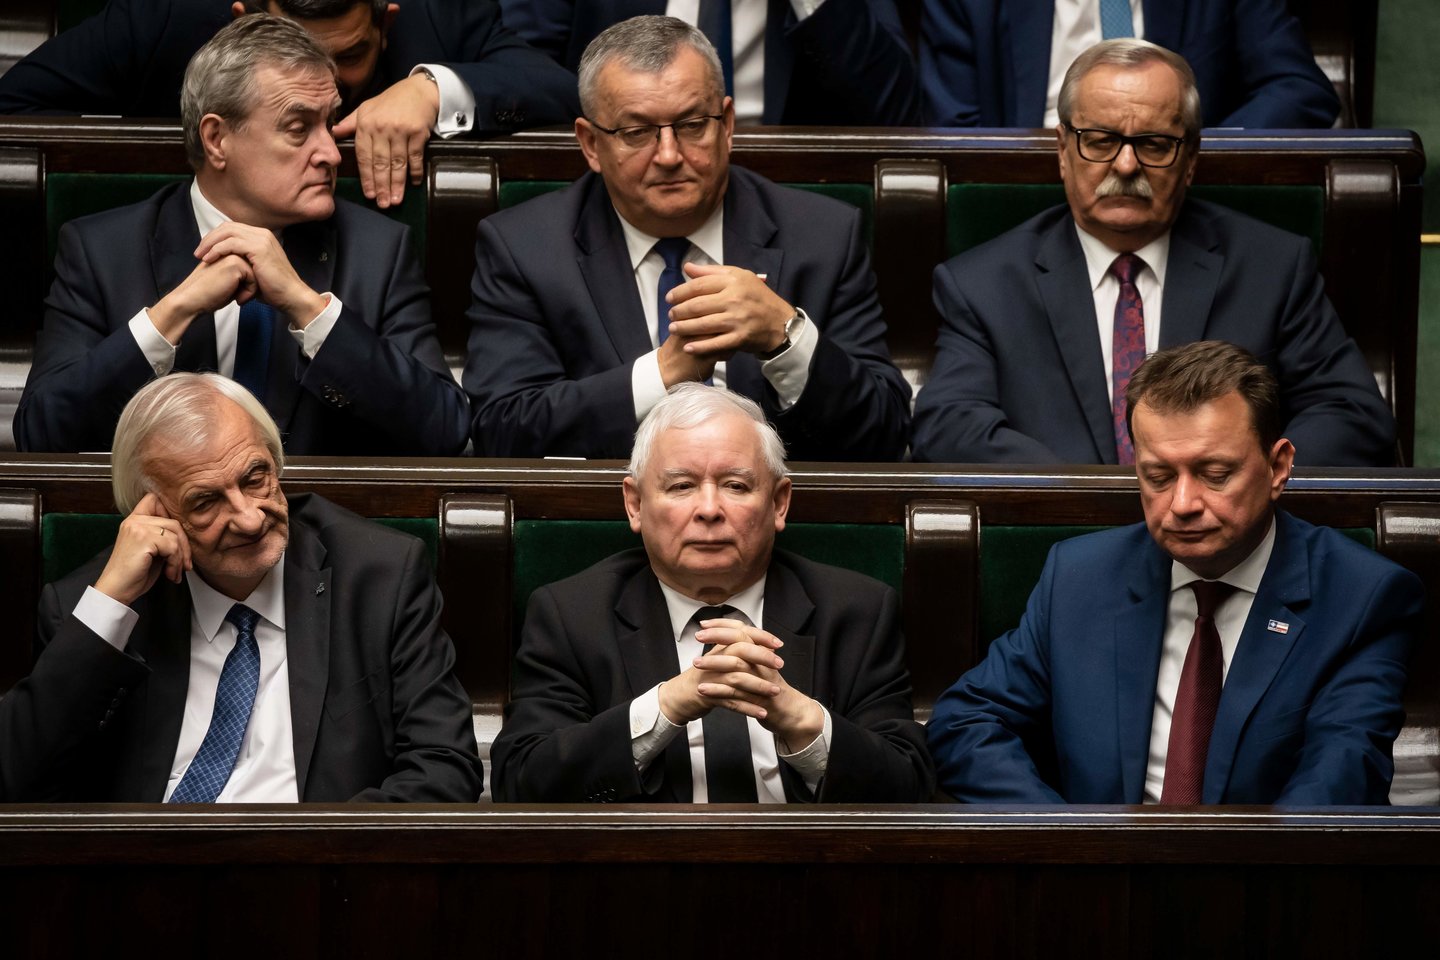 Vakar įvyko pirmasis Lenkijos Seimo posėdis, tartasi, kas taps Senato pirmininku. O pirmadienį minėtos Lenkijos nepriklausomybės atgavimo 101-osios metinės.<br>AFP/Scanpix nuotr.